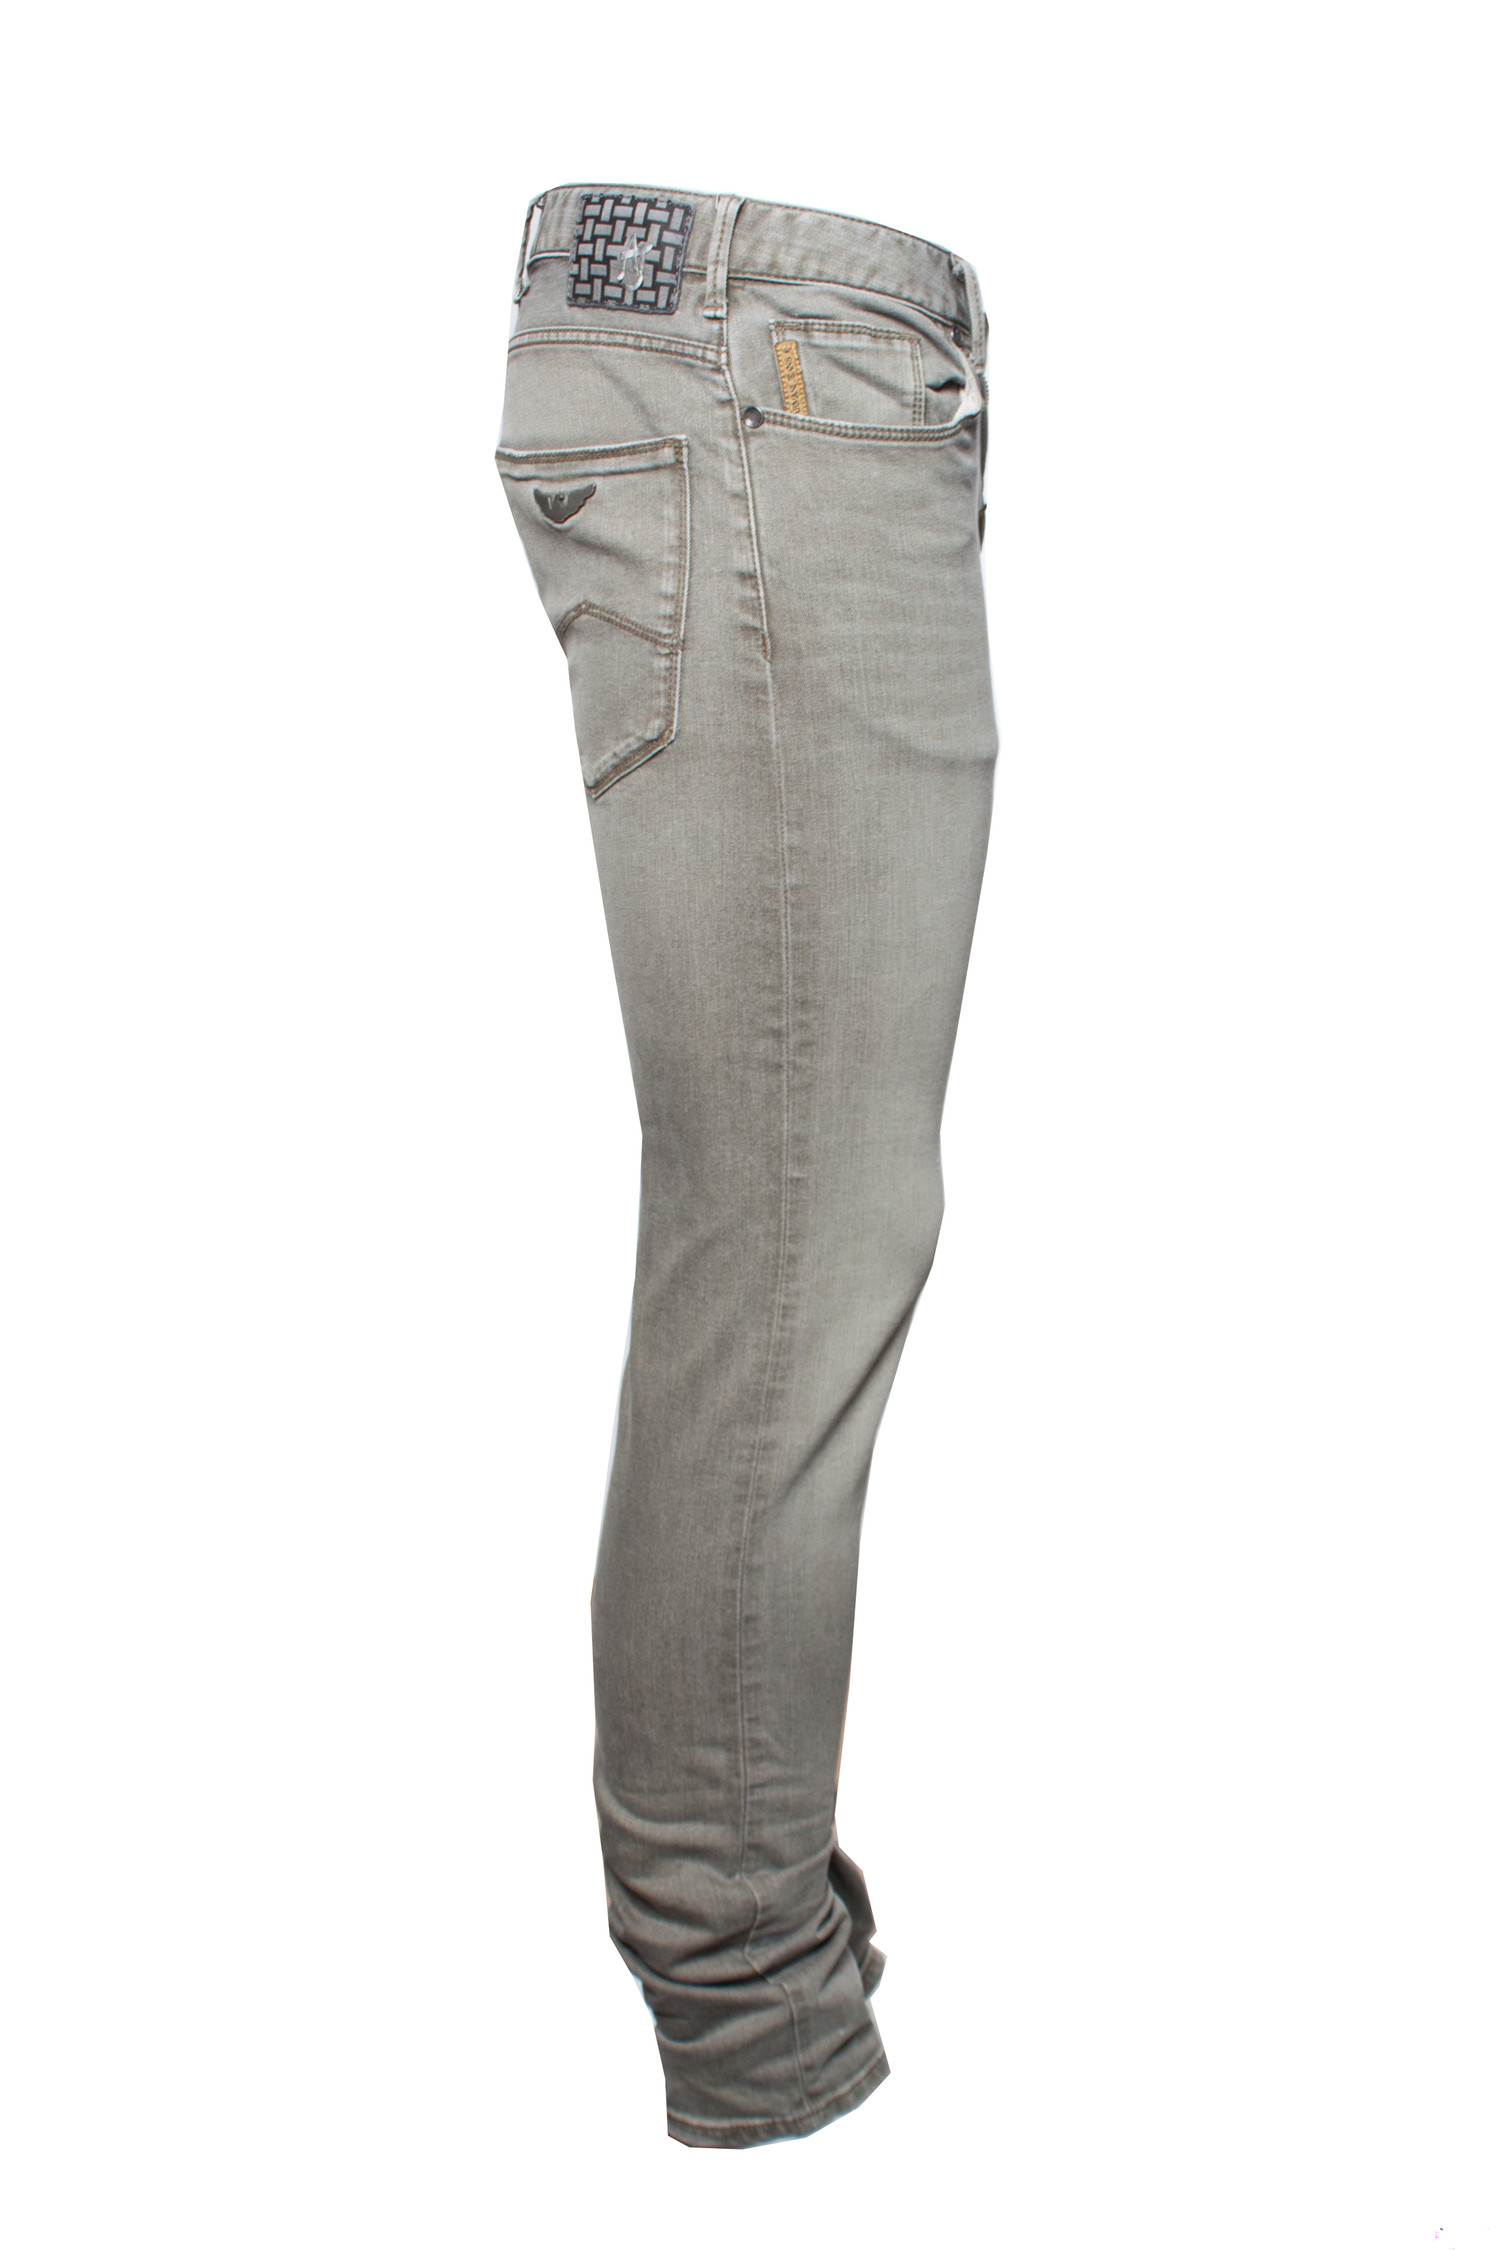 Armani Jeans, Light grey slim fit jeans in size W29/S. - Unique Designer  Pieces